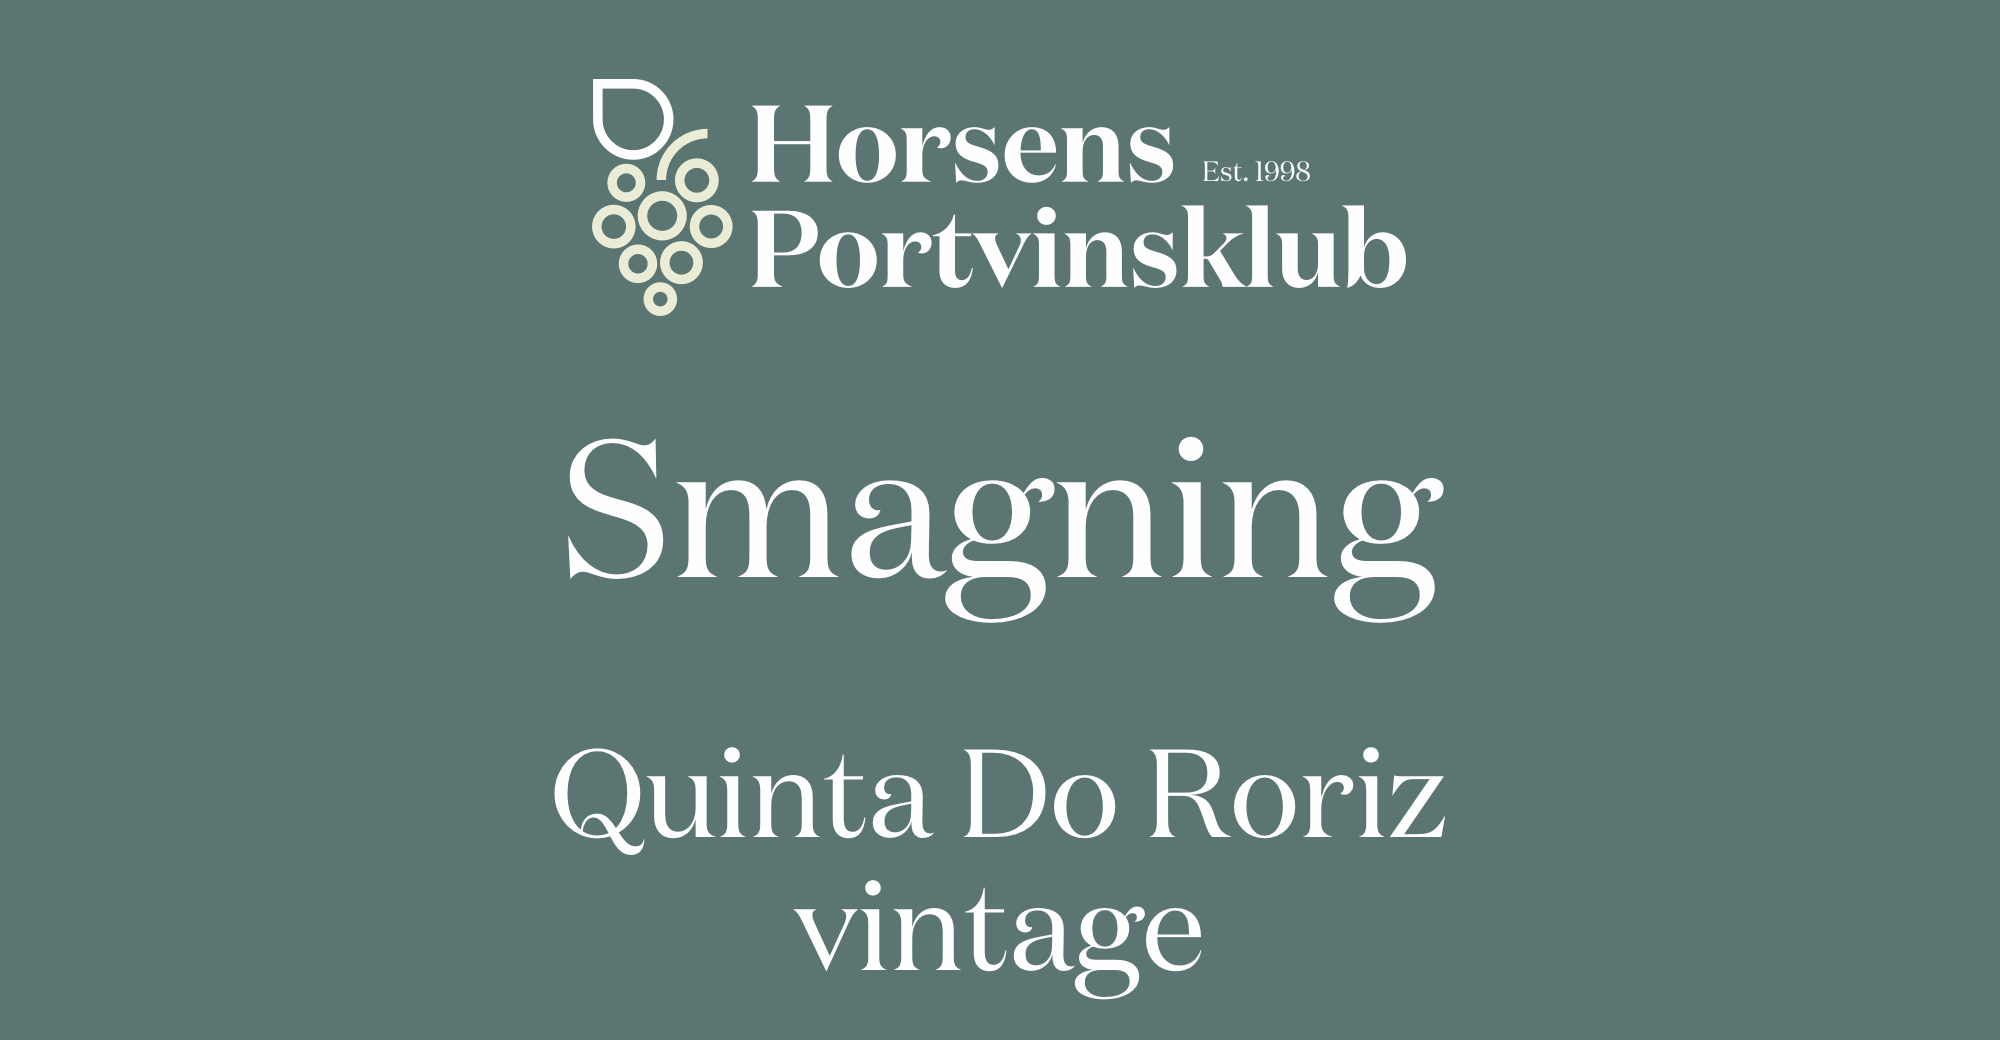 Generalforsamling + Quinta Do Roriz vintage